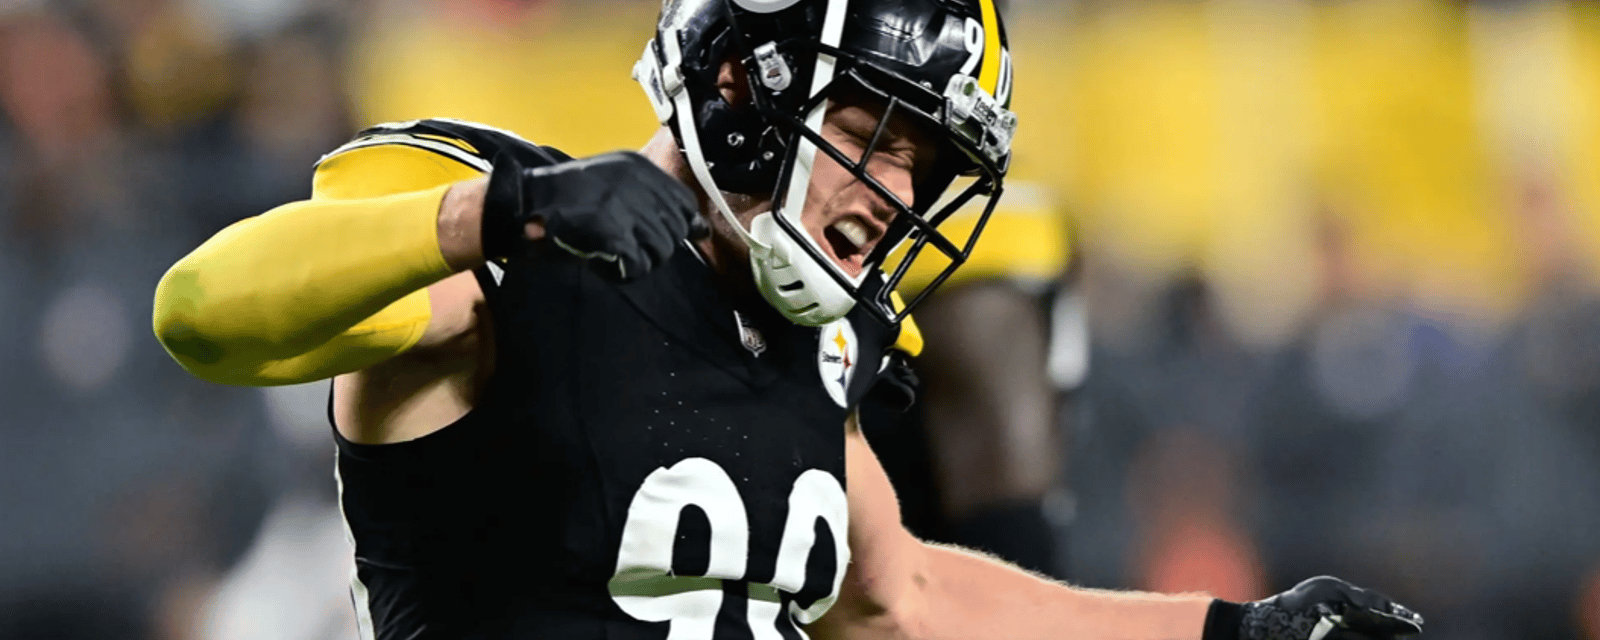 Crucial update released on Steelers' T.J. Watt 